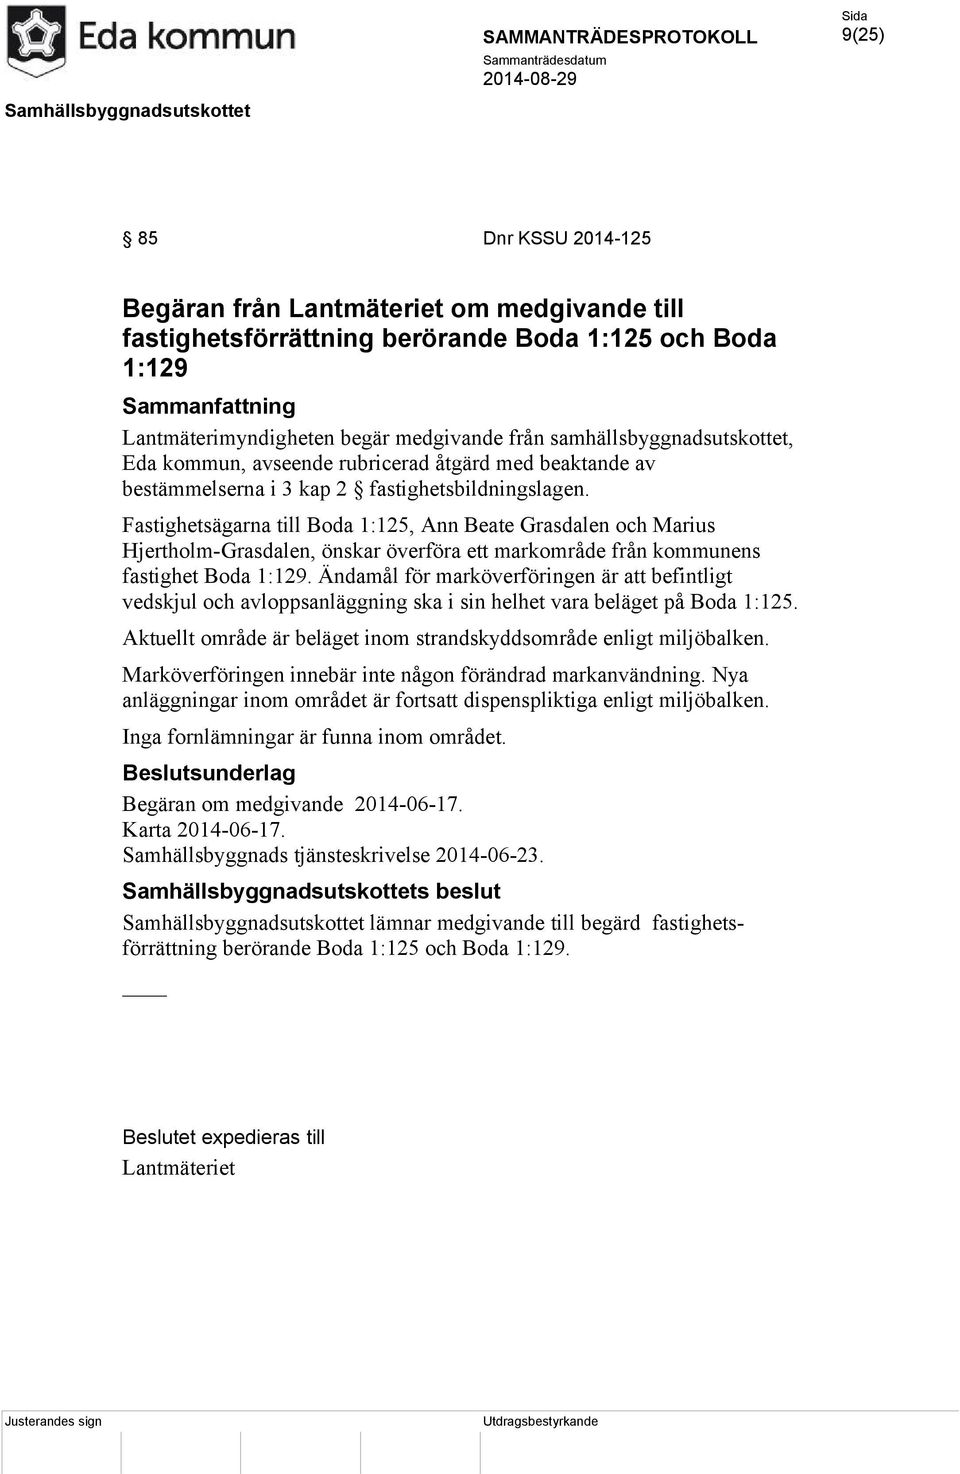 Fastighetsägarna till Boda 1:125, Ann Beate Grasdalen och Marius Hjertholm-Grasdalen, önskar överföra ett markområde från kommunens fastighet Boda 1:129.